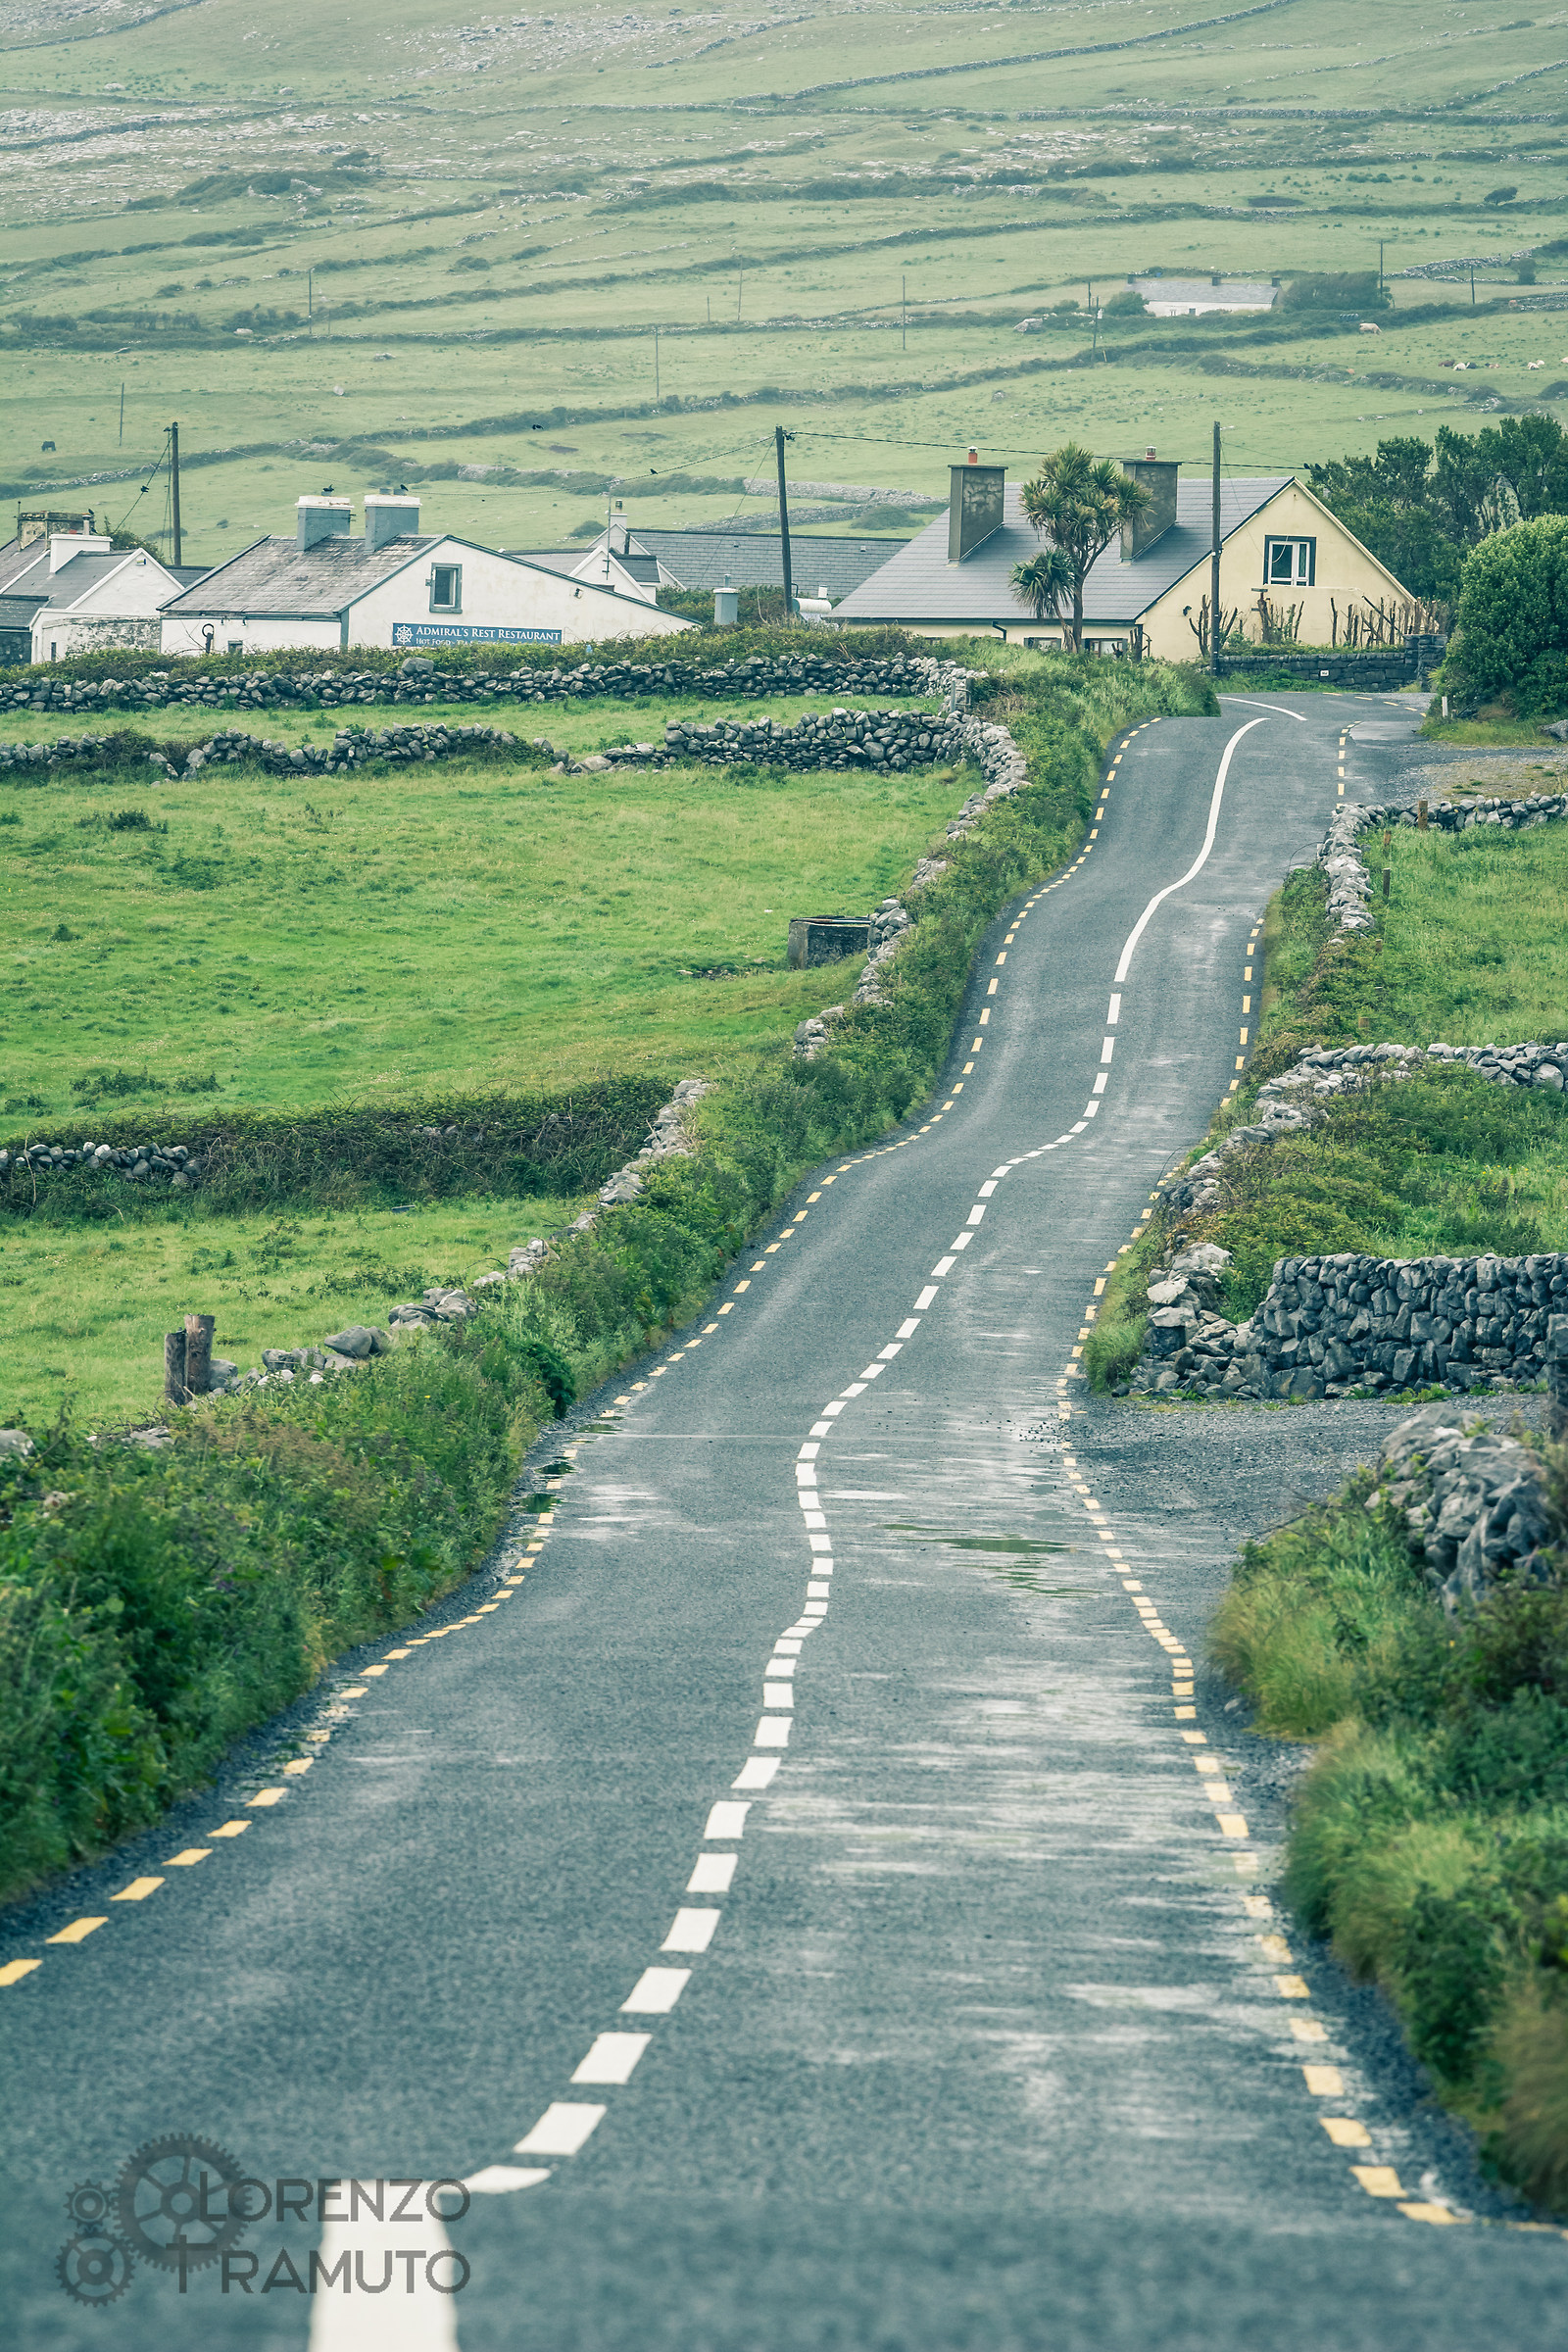 Irish roads...